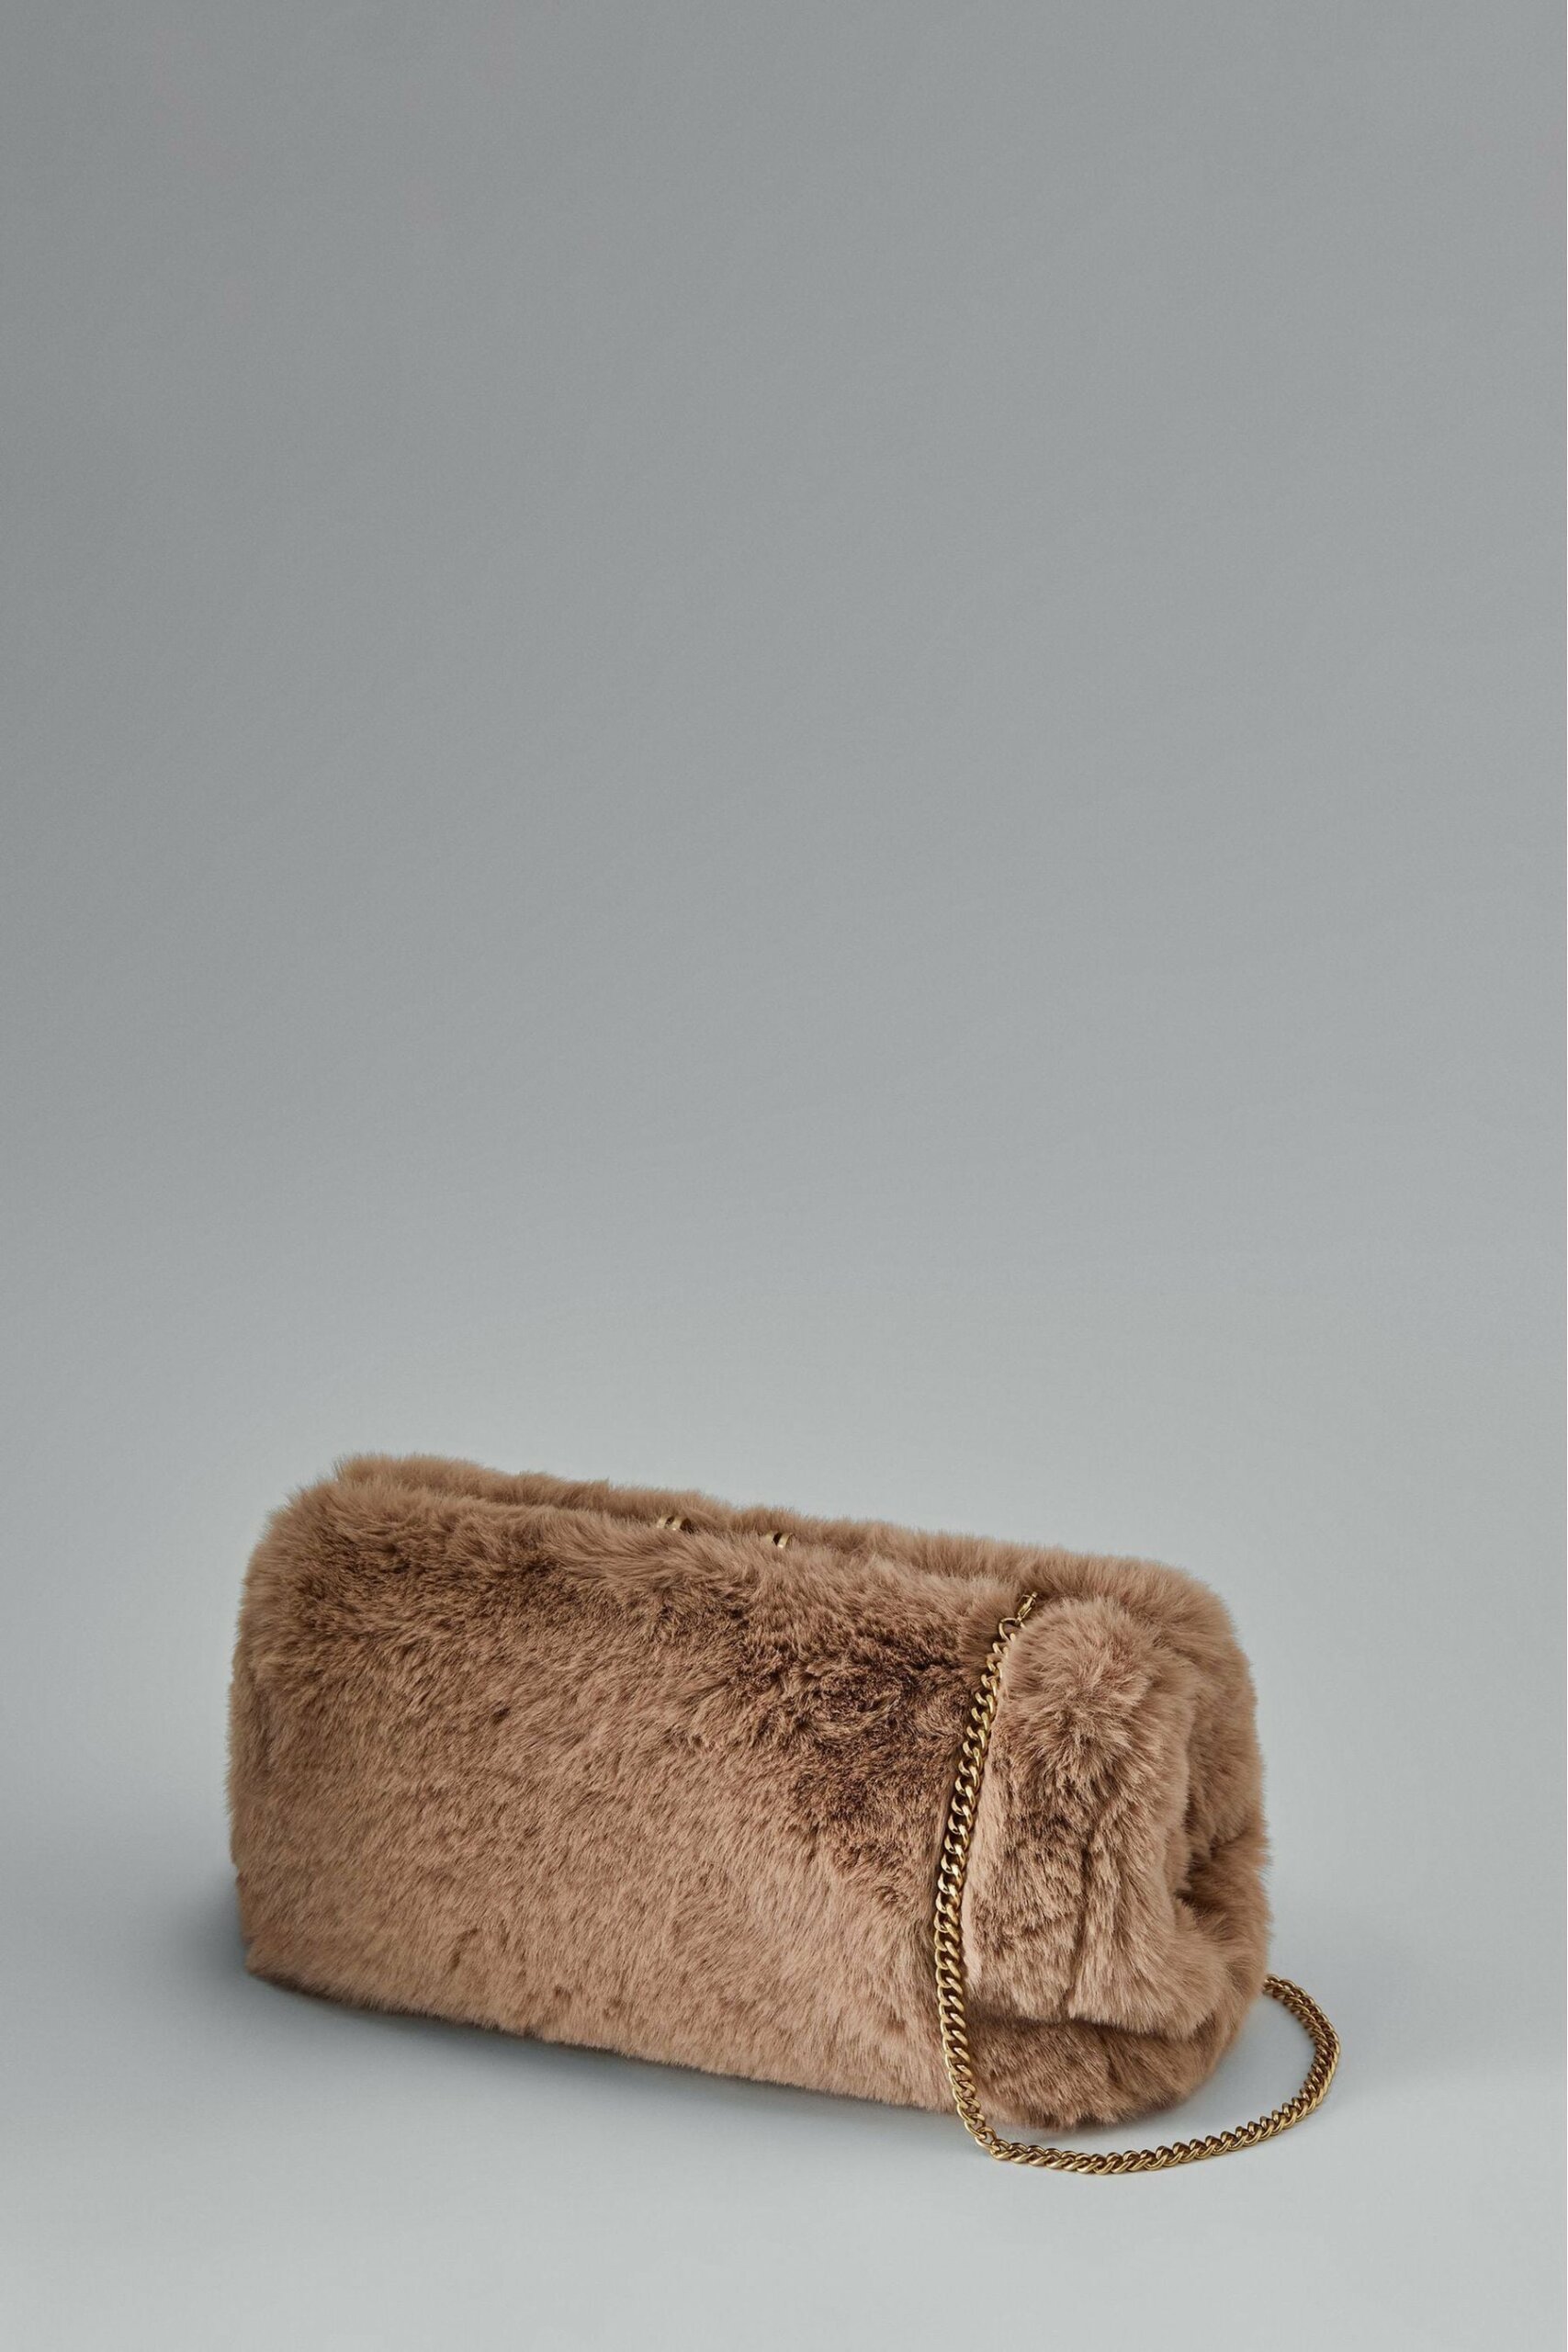 Monza - Natural Faux Fur Clutch Bag